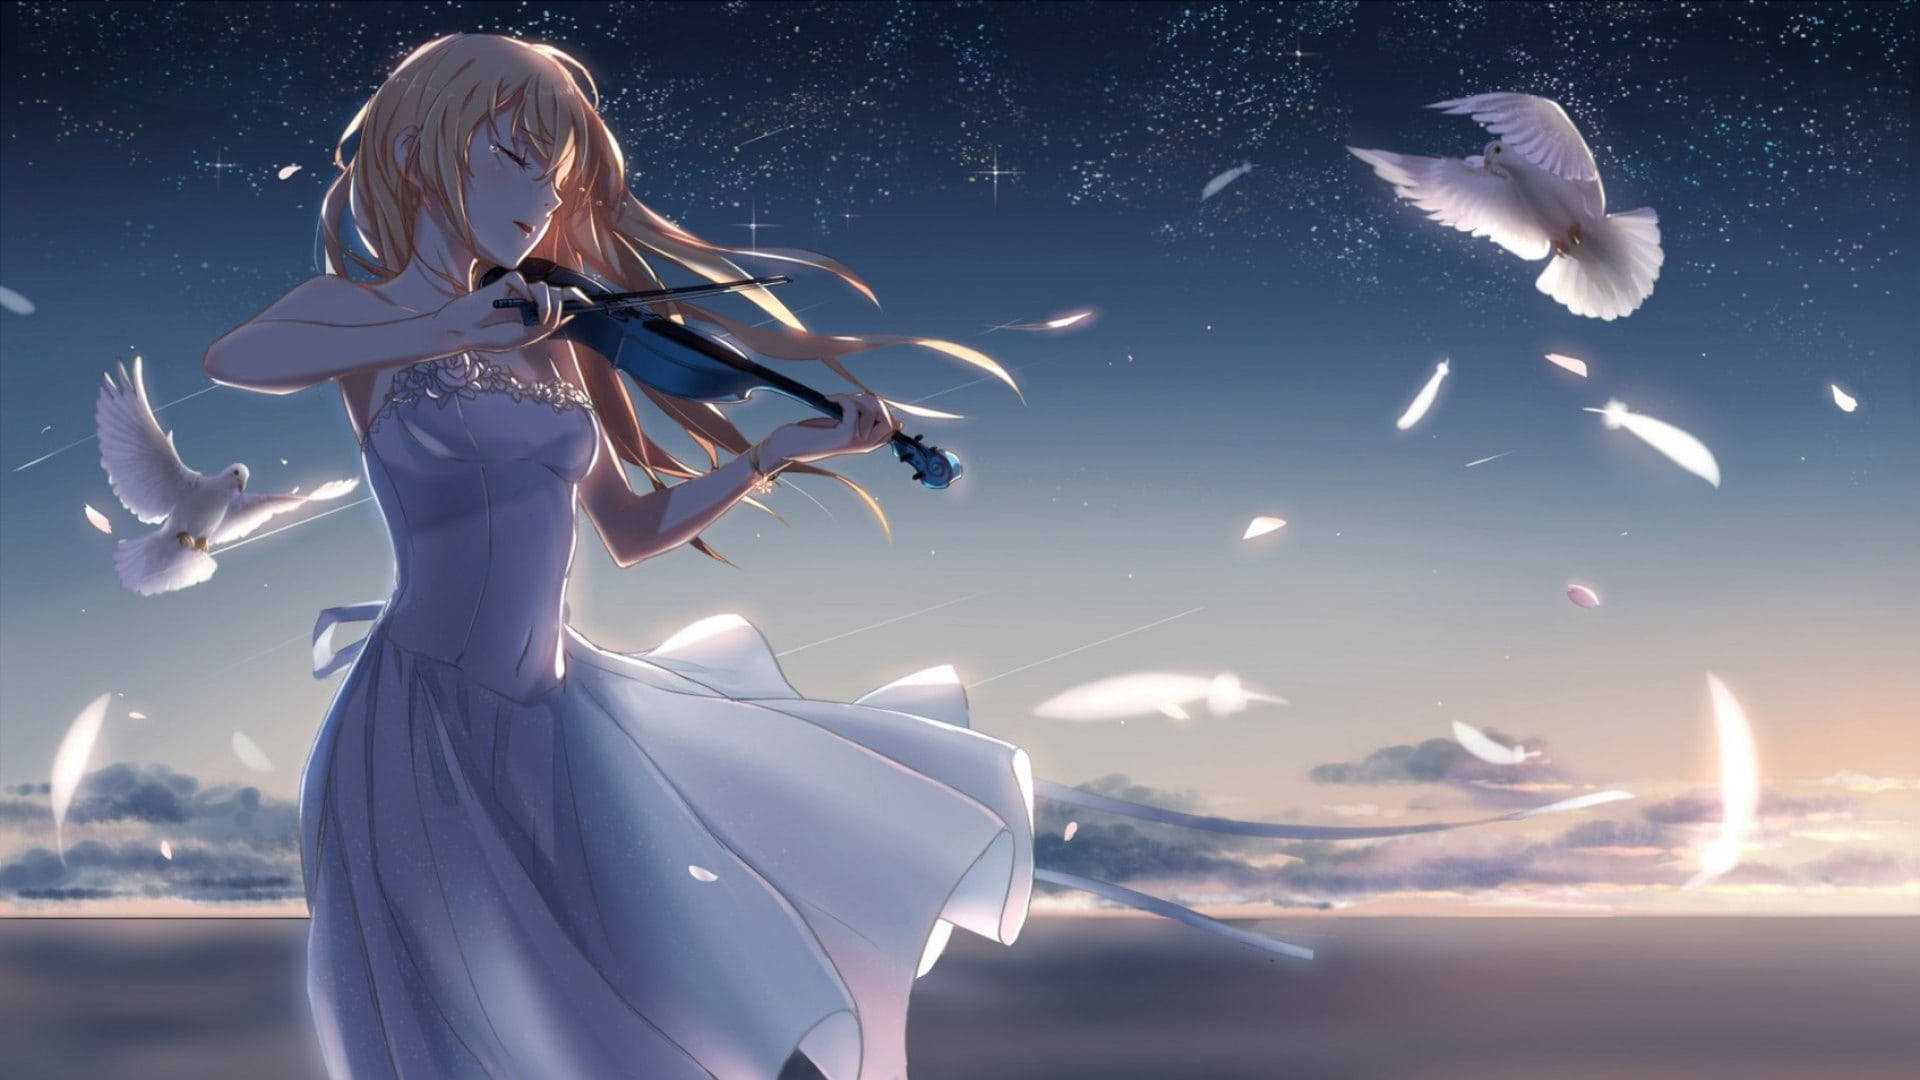 Aesthetic Sad Anime Girl Playing Violin Background